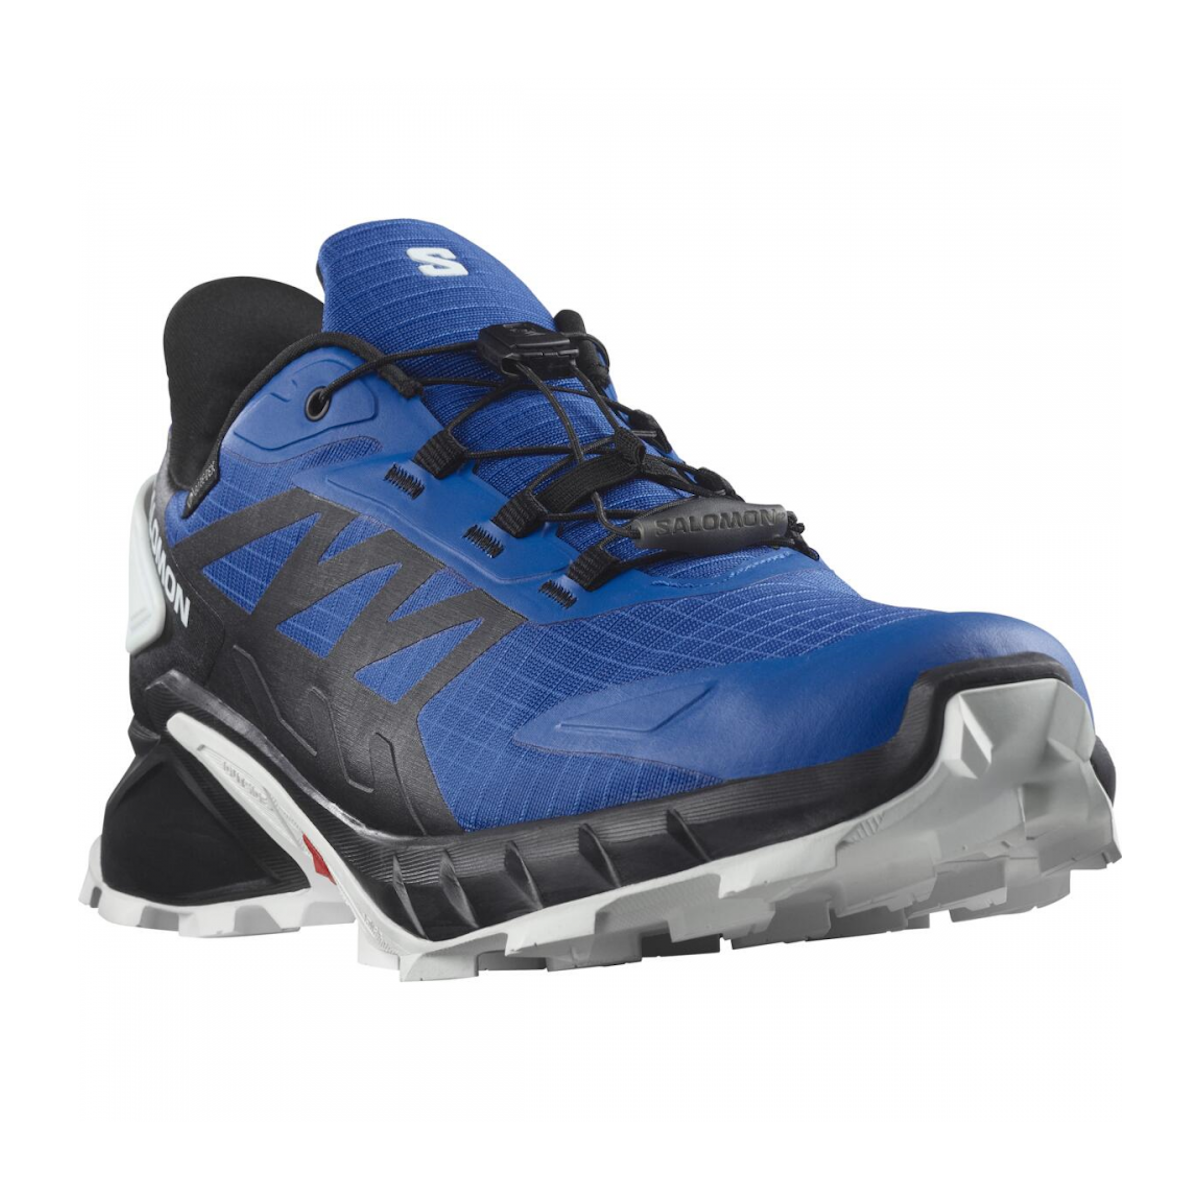 SALOMON SUPERCROSS 4 GTX trail running shoes - blue/black/white